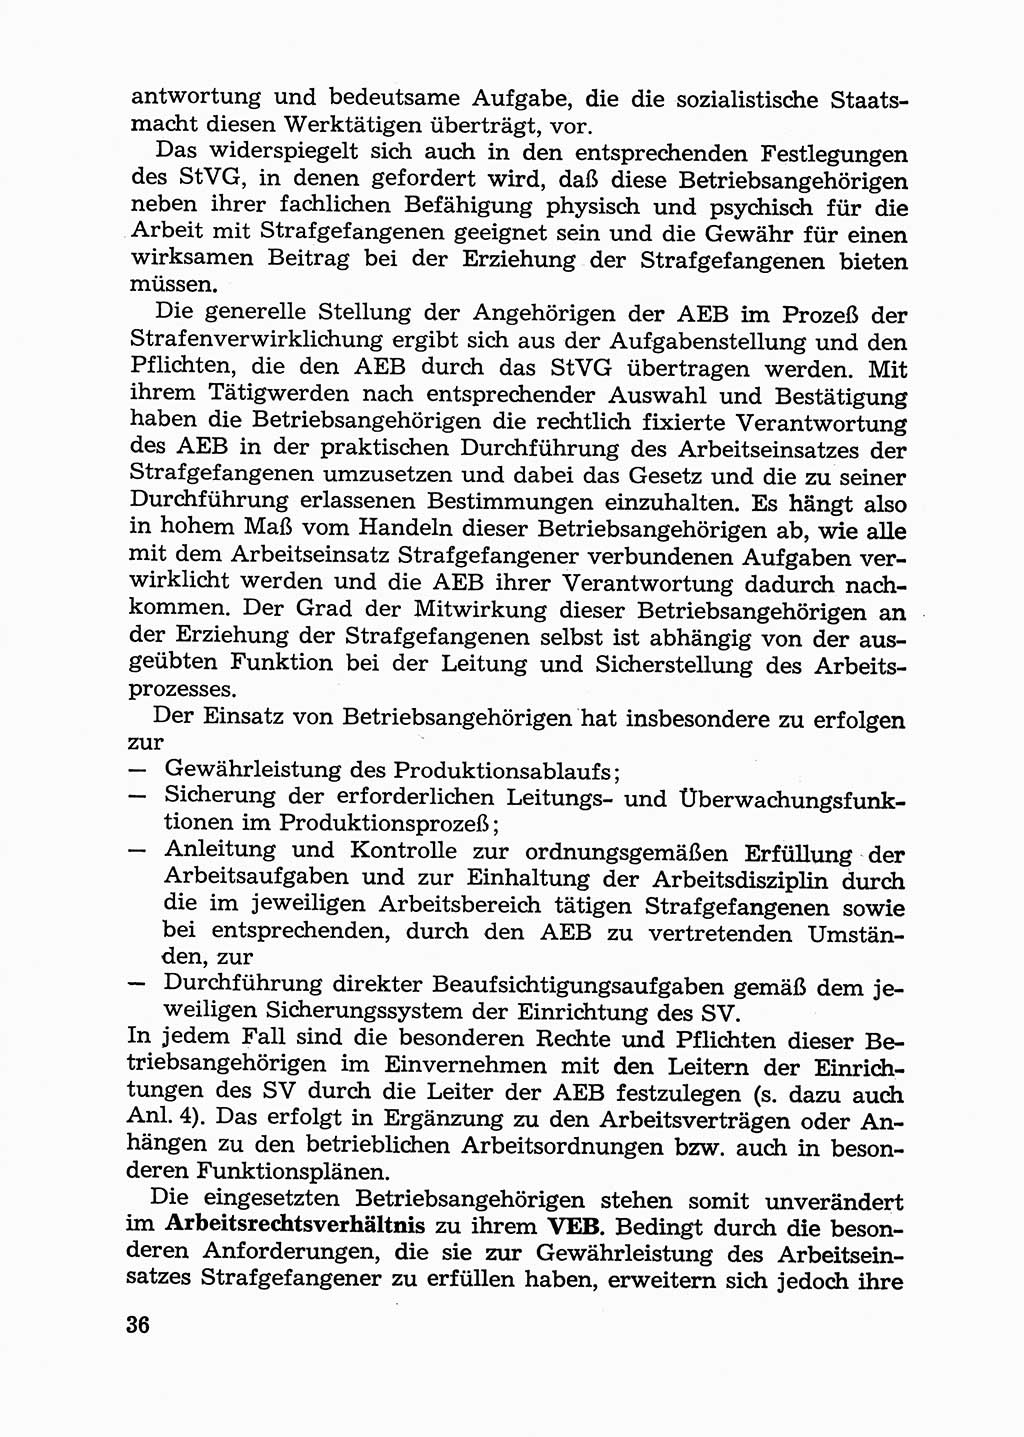 Handbuch für Betriebsangehörige, Abteilung Strafvollzug (SV) [Ministerium des Innern (MdI) Deutsche Demokratische Republik (DDR)] 1981, Seite 36 (Hb. BA Abt. SV MdI DDR 1981, S. 36)